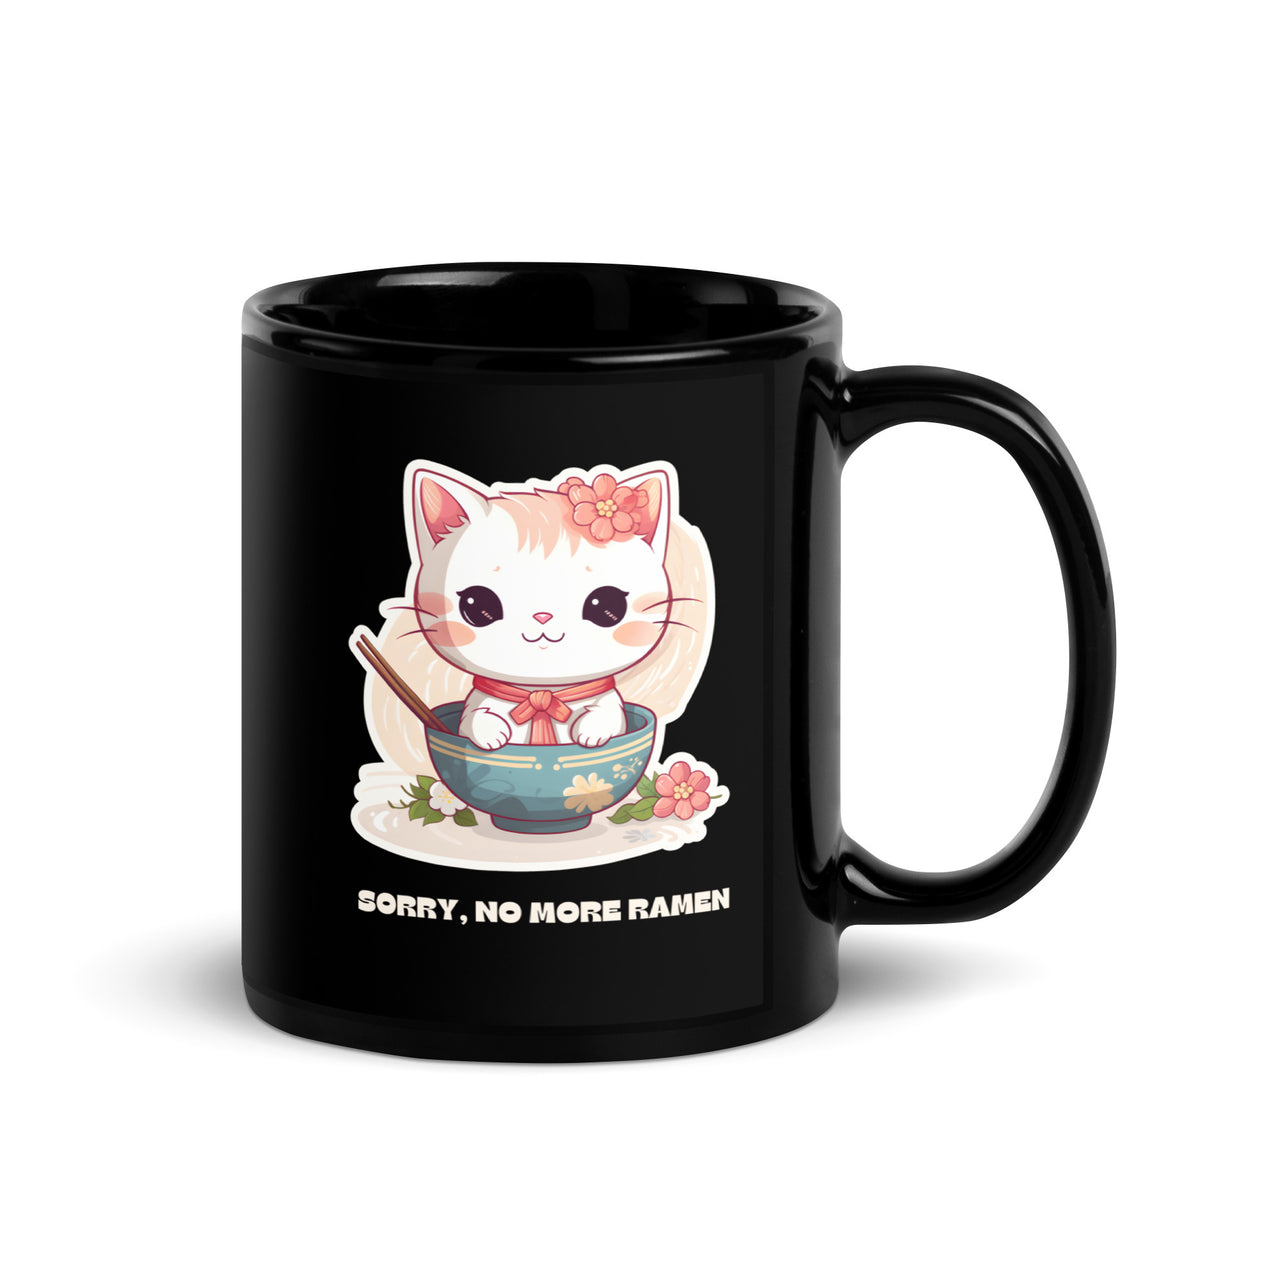 Sorry, No More Ramen: Anime Cat Black Mug